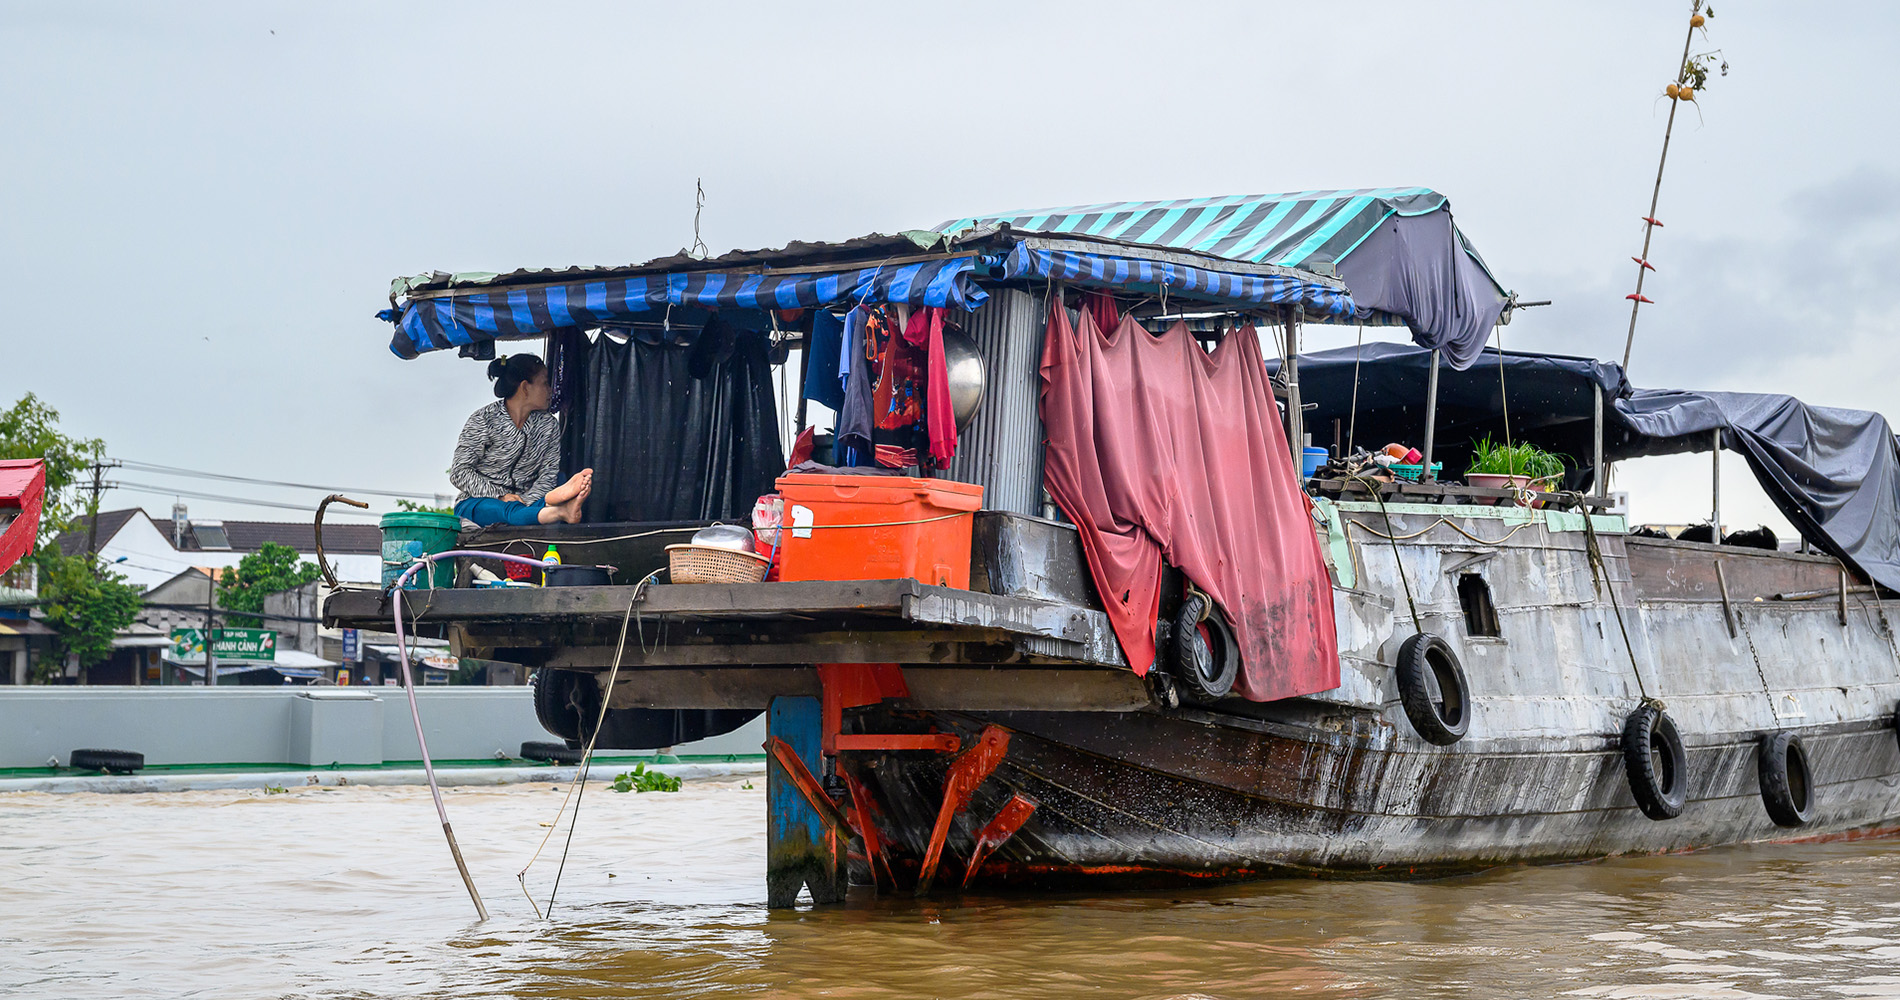 marché flottant de Cai Ran